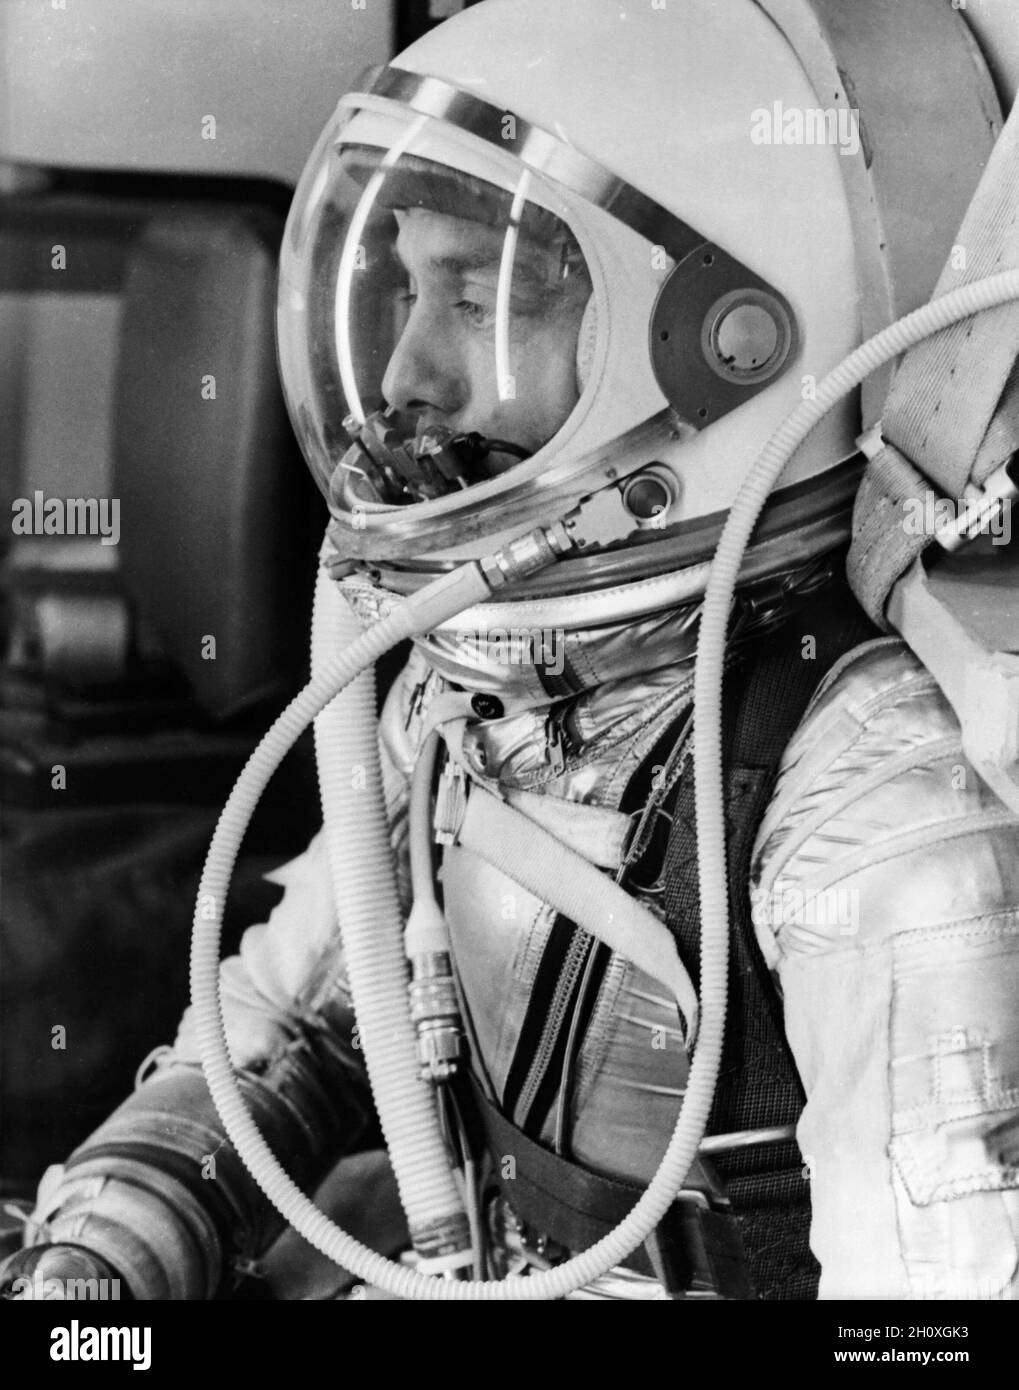 (5. Mai 1961) --- Seitenansicht des Astronauten Alan B. Shepard Jr. in seinem Druckanzug, mit geschlossenem Helm, für den Mercury-Redstone 3 (MR-3)-Flug, den ersten bemannten amerikanischen Raumfahrt. Stockfoto